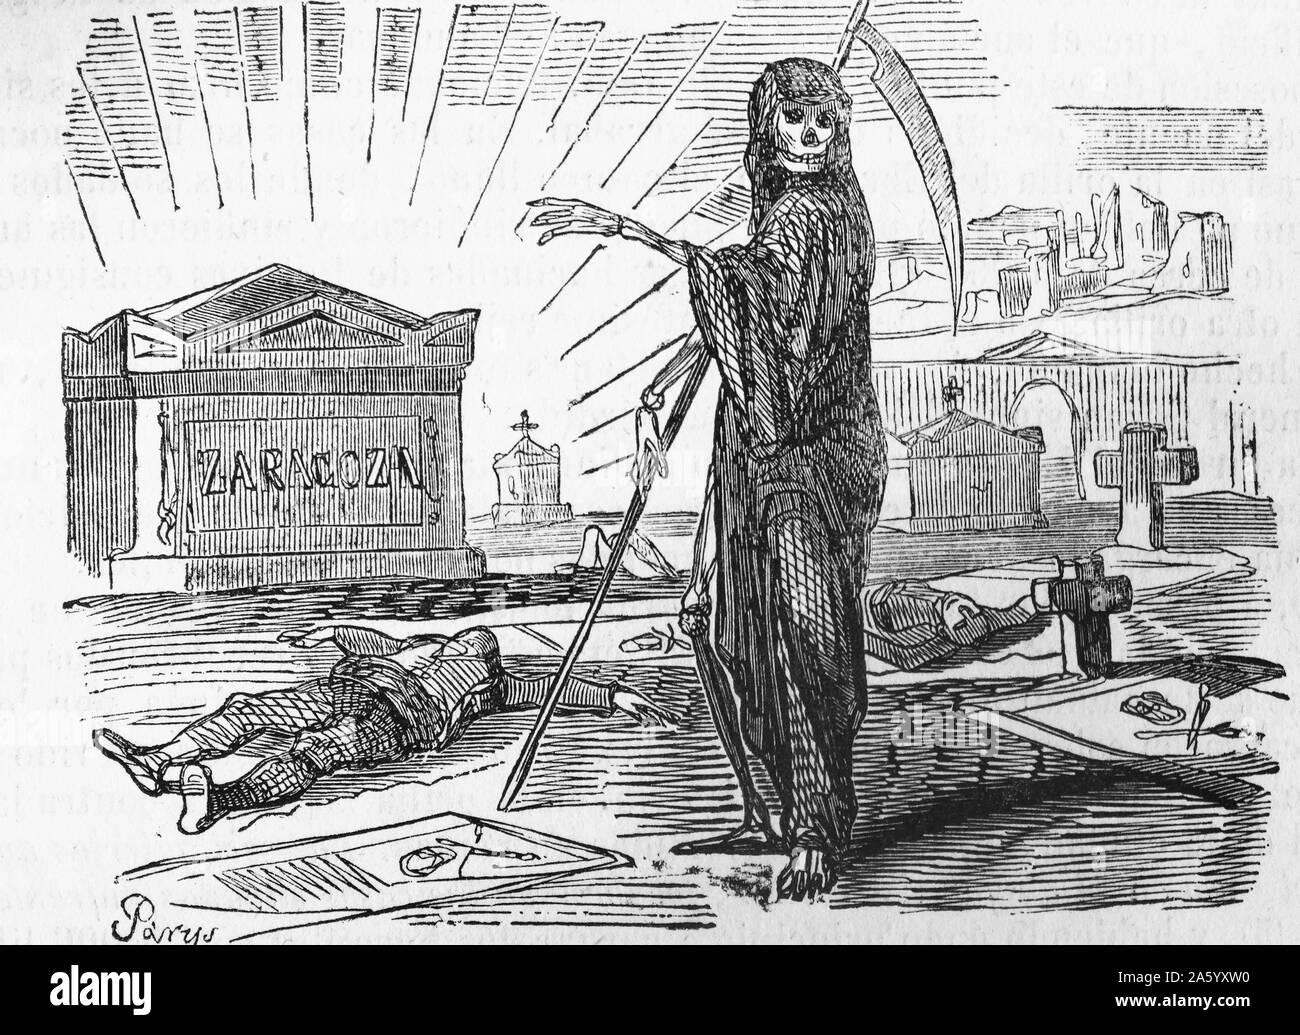 Gravure illustrant le Grimm Reaper à Saragosse pendant la guerre d'Espagne (1807-1814) fut un conflit militaire entre l'Empire de Napoléon et les alliés de l'Espagne, l'Angleterre et le Portugal pour le contrôle de la péninsule ibérique pendant les guerres napoléoniennes. Datée 1810 Banque D'Images